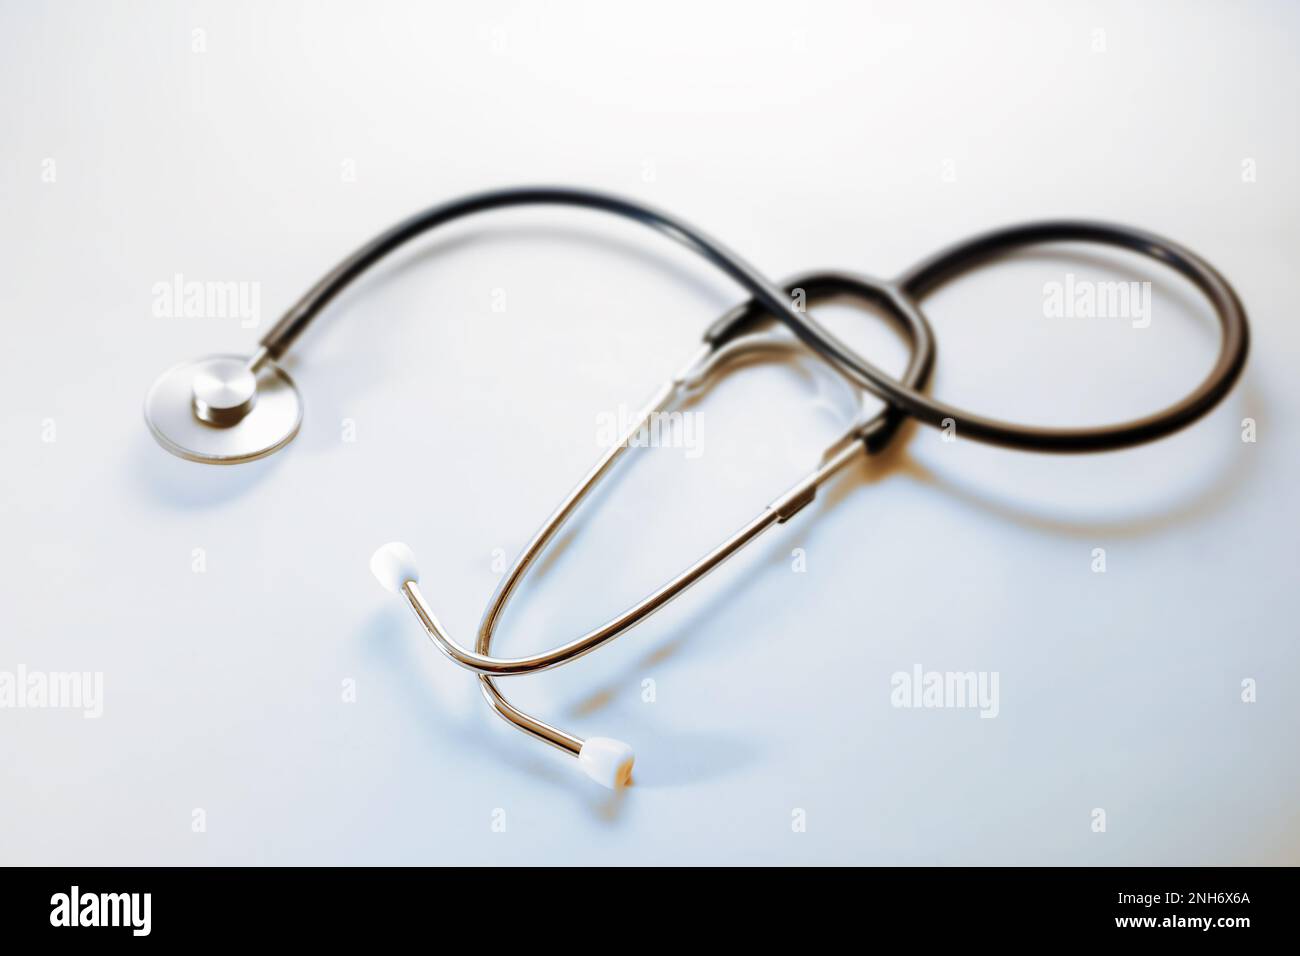 Stethoskop auf hellblauem grauen Hintergrund, medizinisches Gerät zur Auskultation zu den inneren Geräuschen von Herz, Lunge oder Verdauungstrakt, Copy space, se Stockfoto